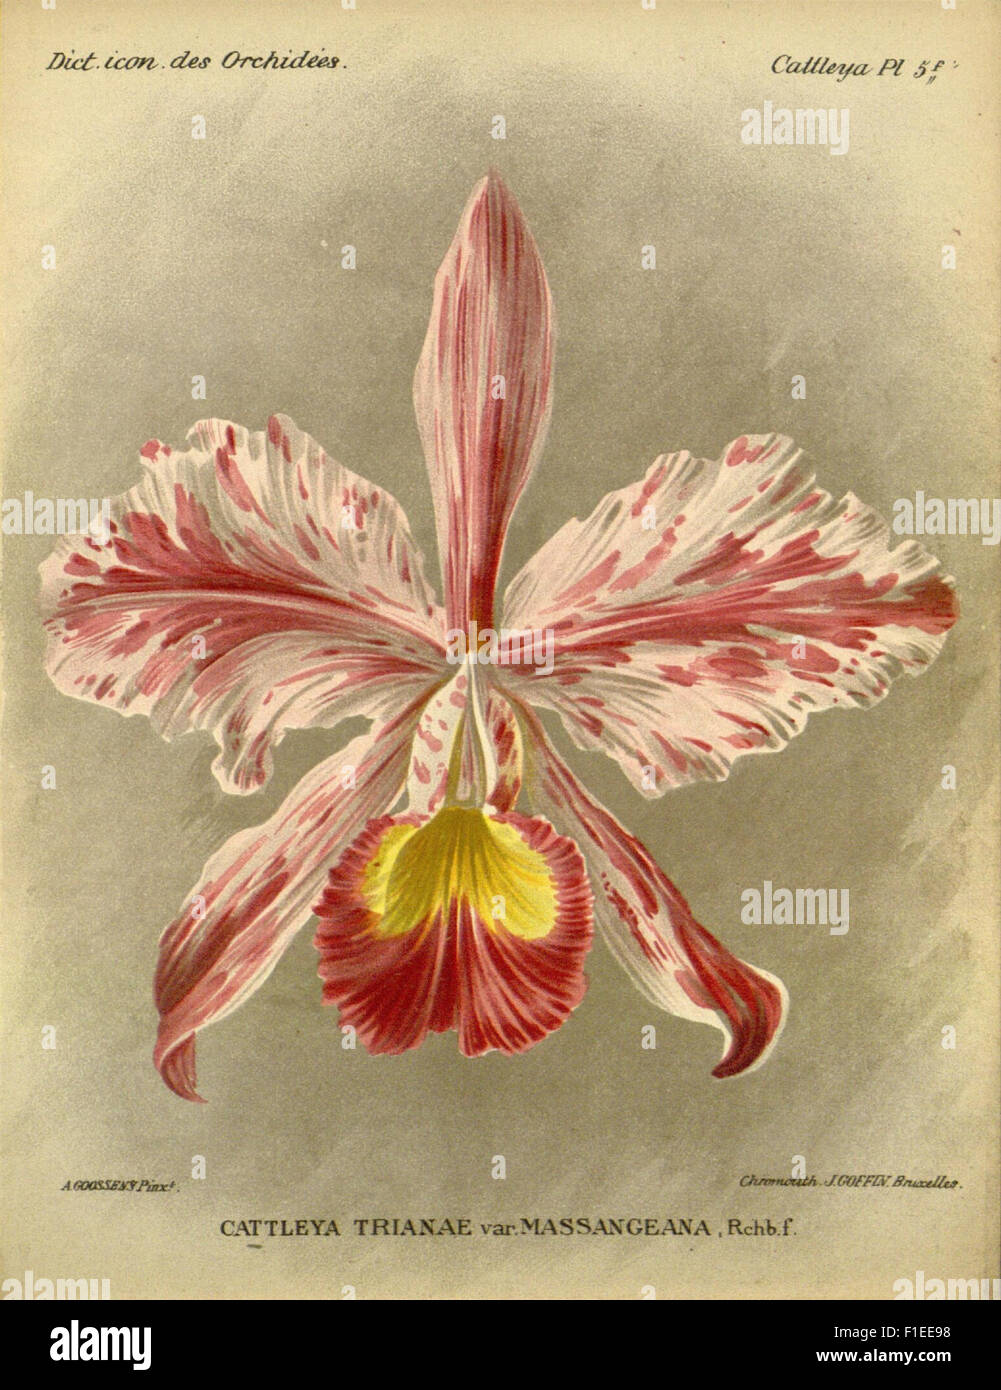 Dictionnaire iconographique des orchidees Foto Stock